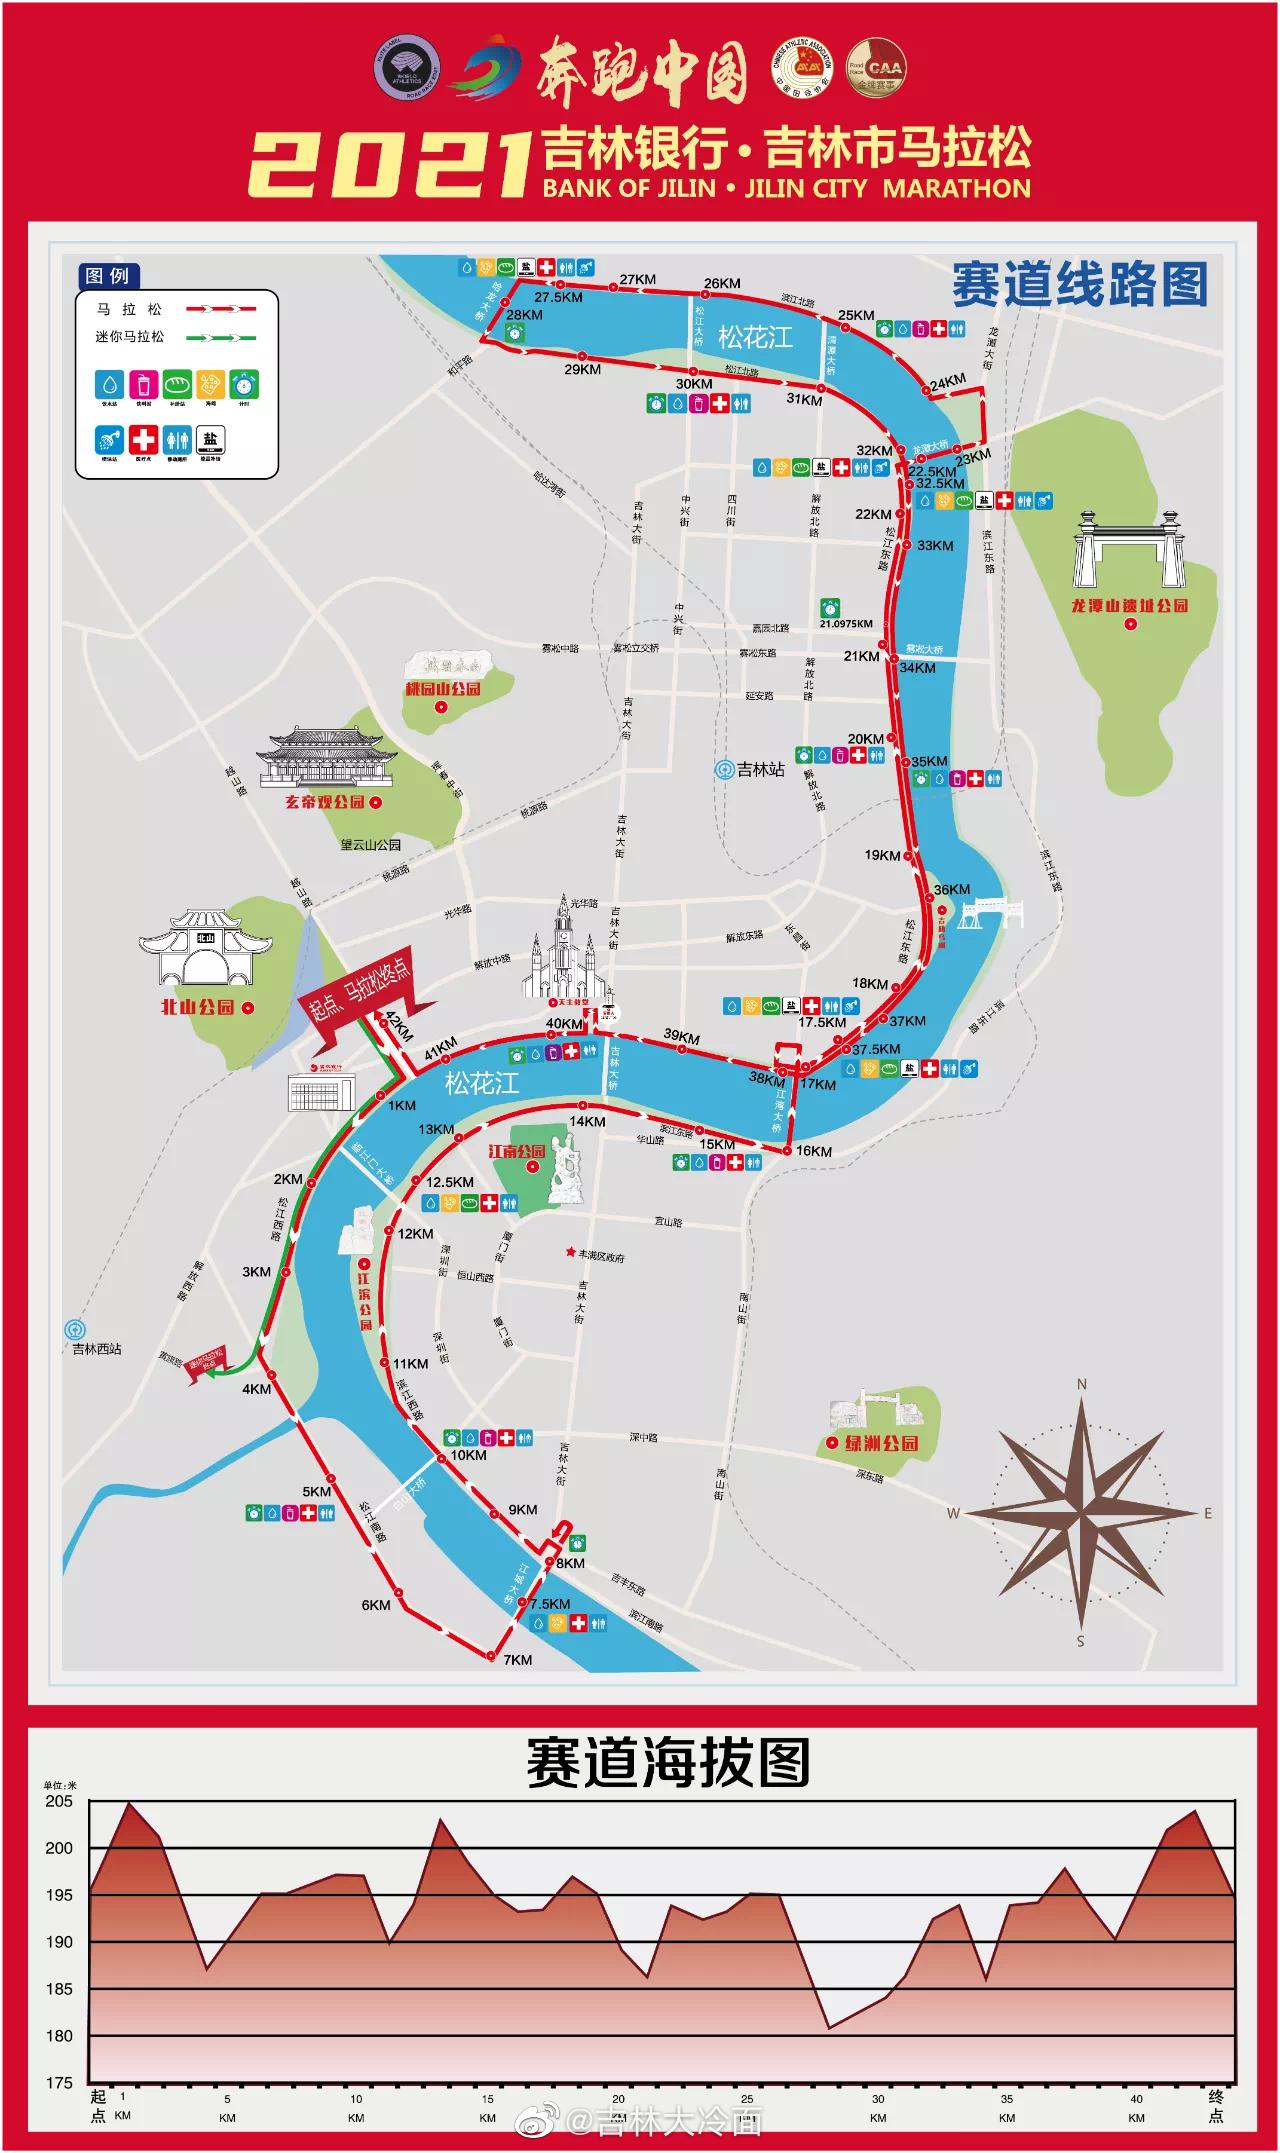 2021吉林市马拉松赛道线路图发布